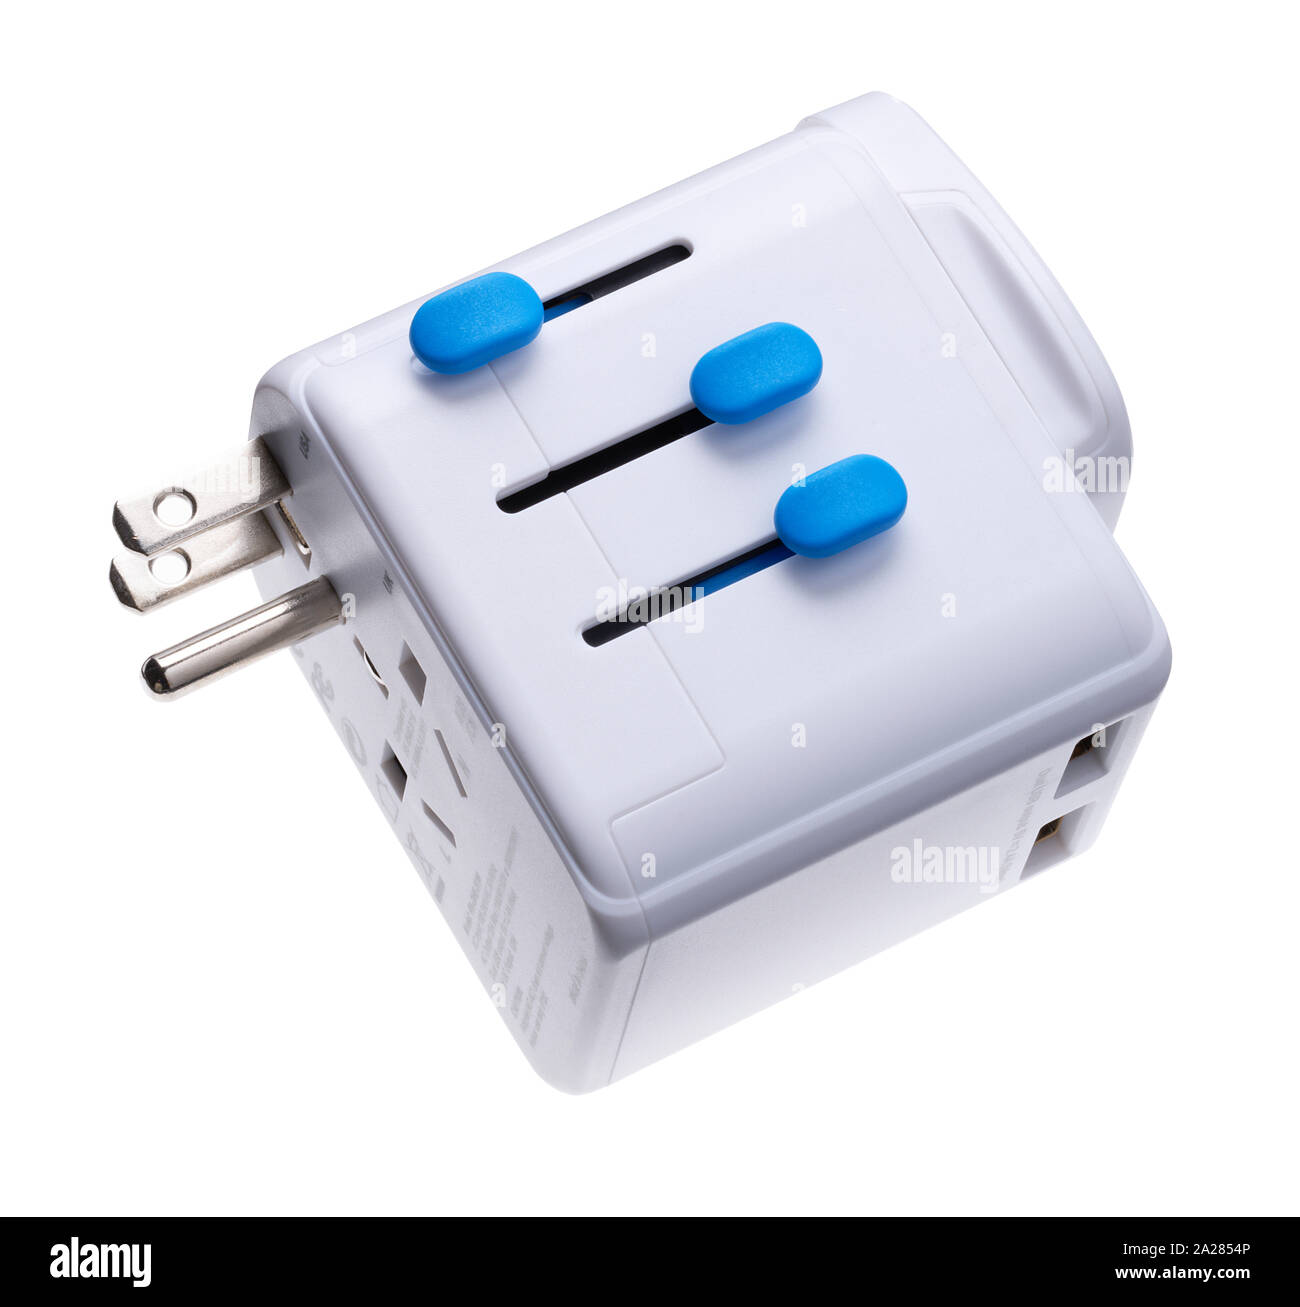 Un adaptateur de voyage, Adaptr ou adaptateur, utilisé pour convertir des bouchons pour mettre en place les prises électriques. Banque D'Images